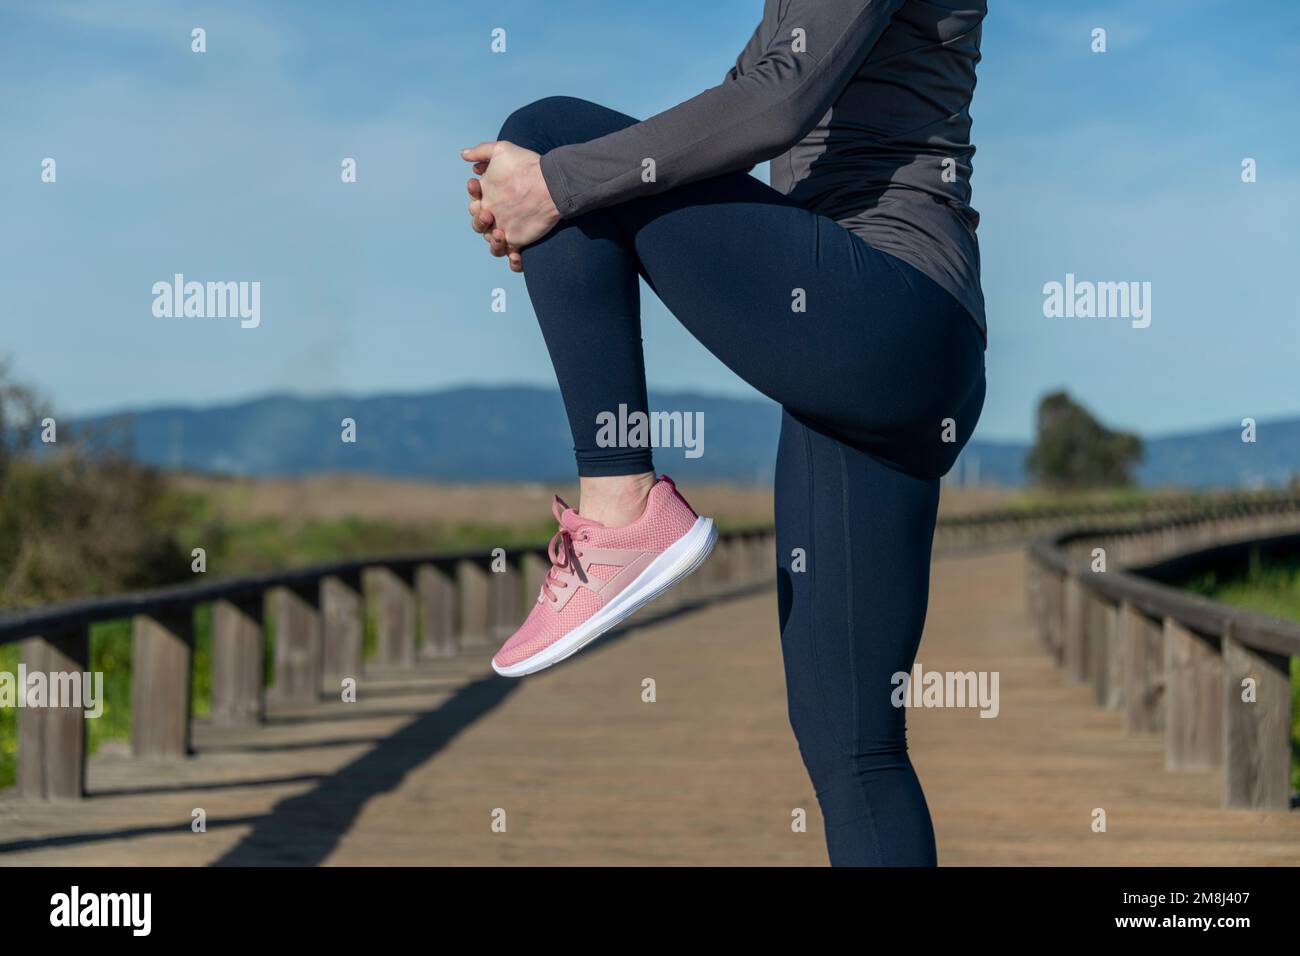 Beindehnung Training Trainingläuferin beim Laufen Warm-Up, dehnen sich die Oberschenkelmuskeln im Stehen mit einem Knie bis zur Brust. Stockfoto